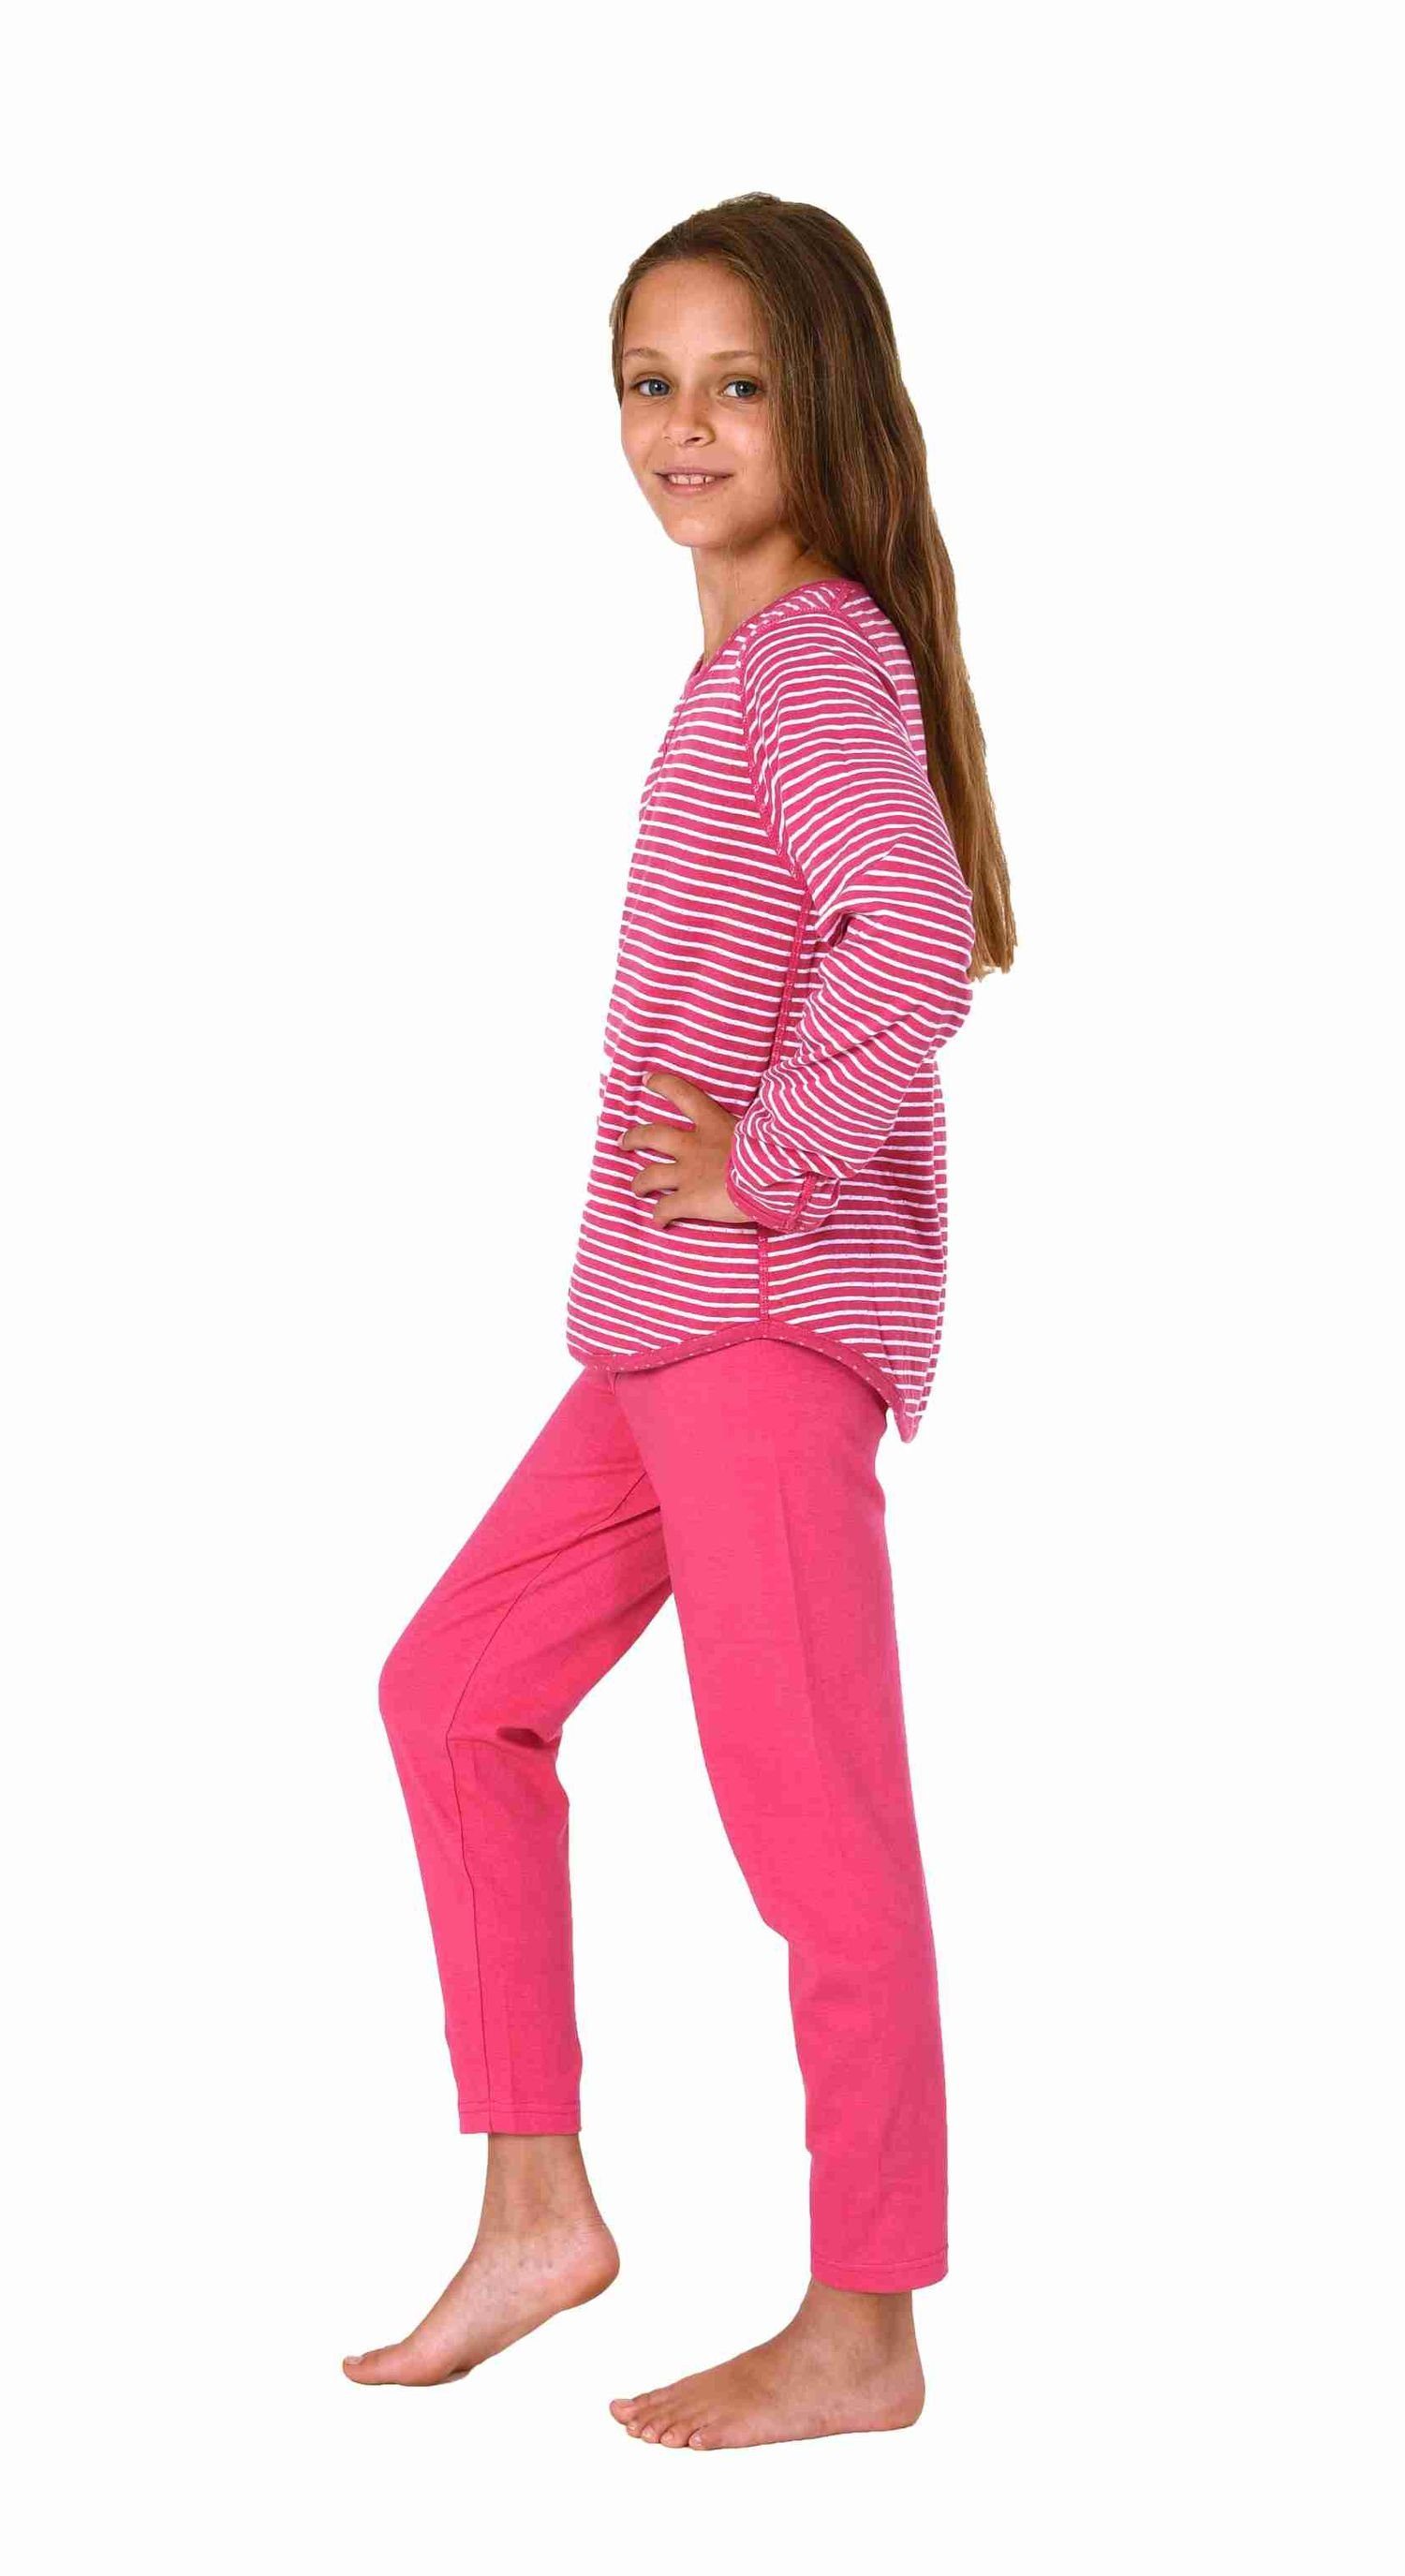 zum wenden Pyjama Schlafanzug Style Mädchen einem langarm rot - in 2 Normann Designs